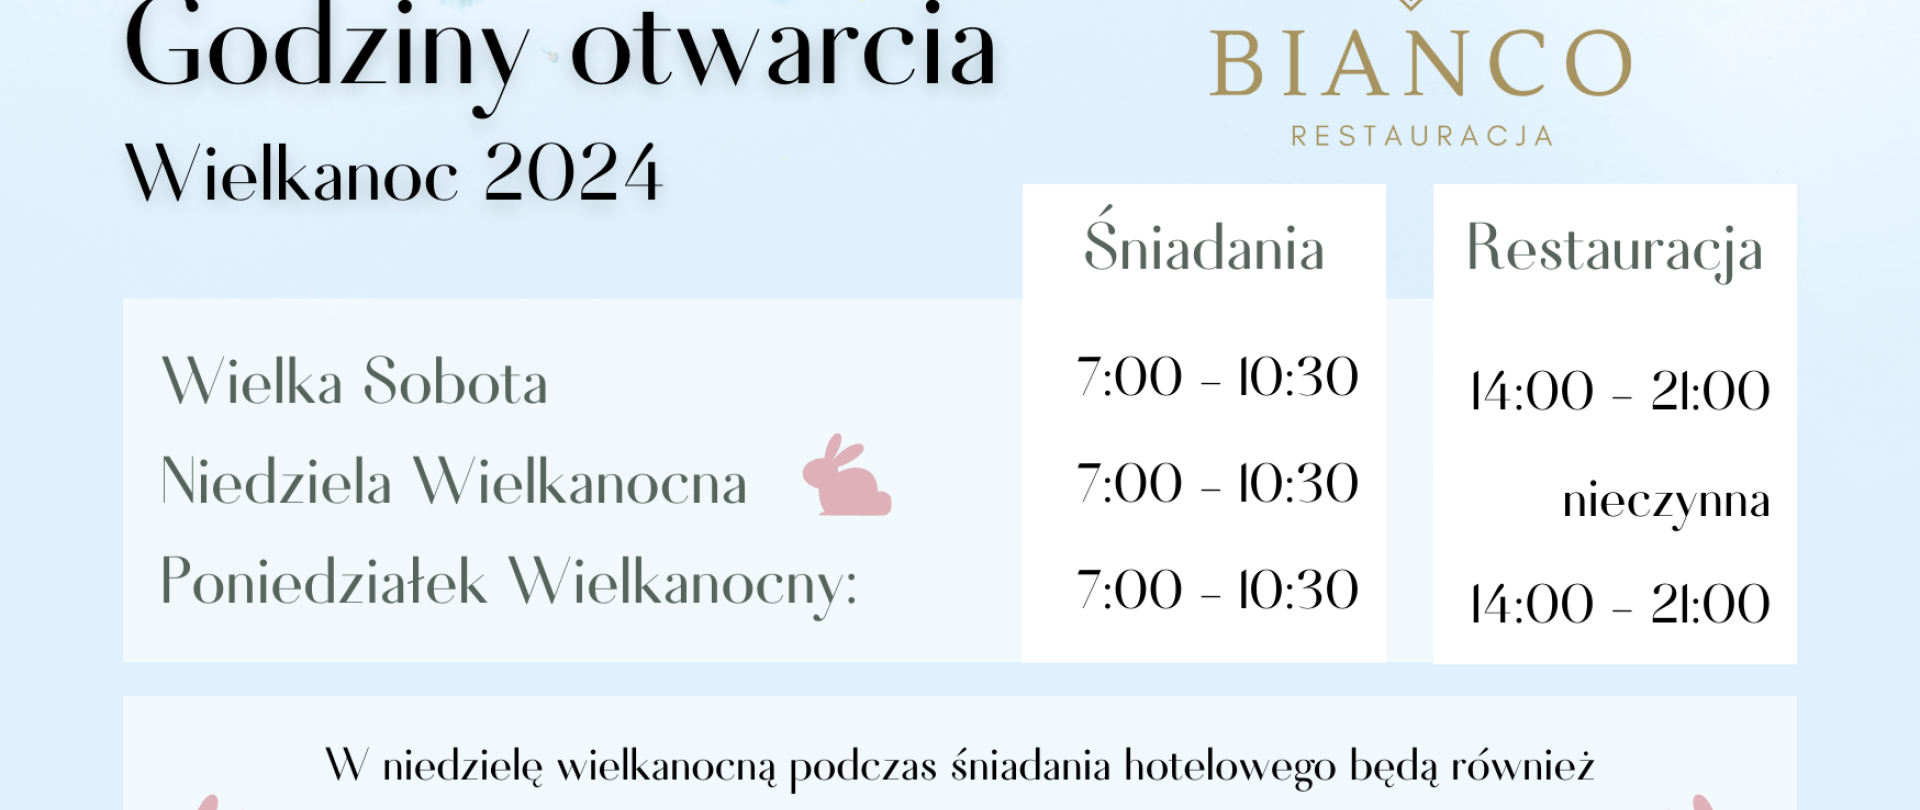 Godziny otwarcia Restauracji Bianco w Wielkanoc!